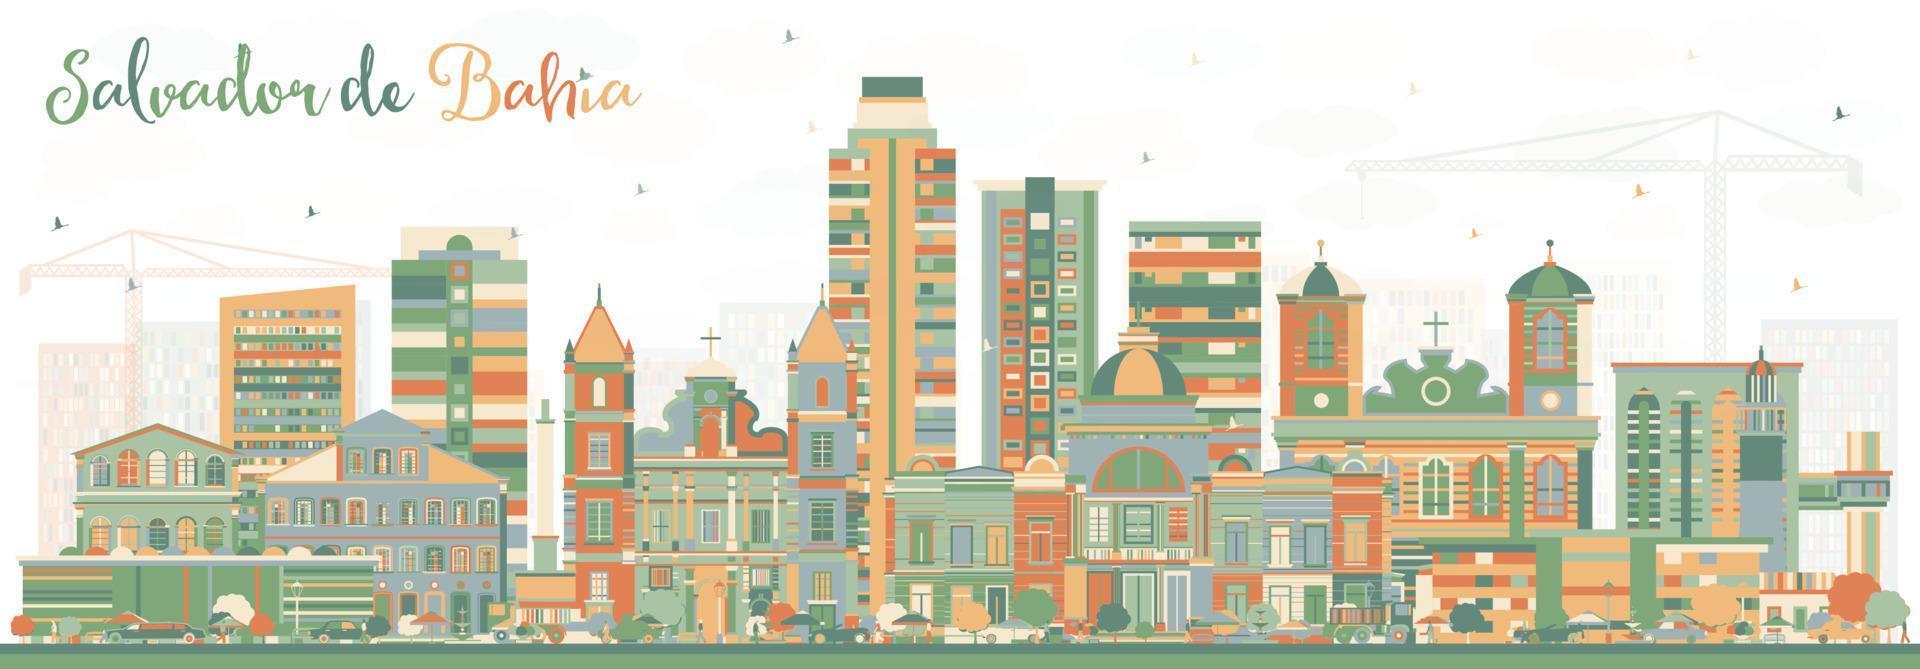 horizonte de la ciudad de salvador de bahia con edificios de color. vector